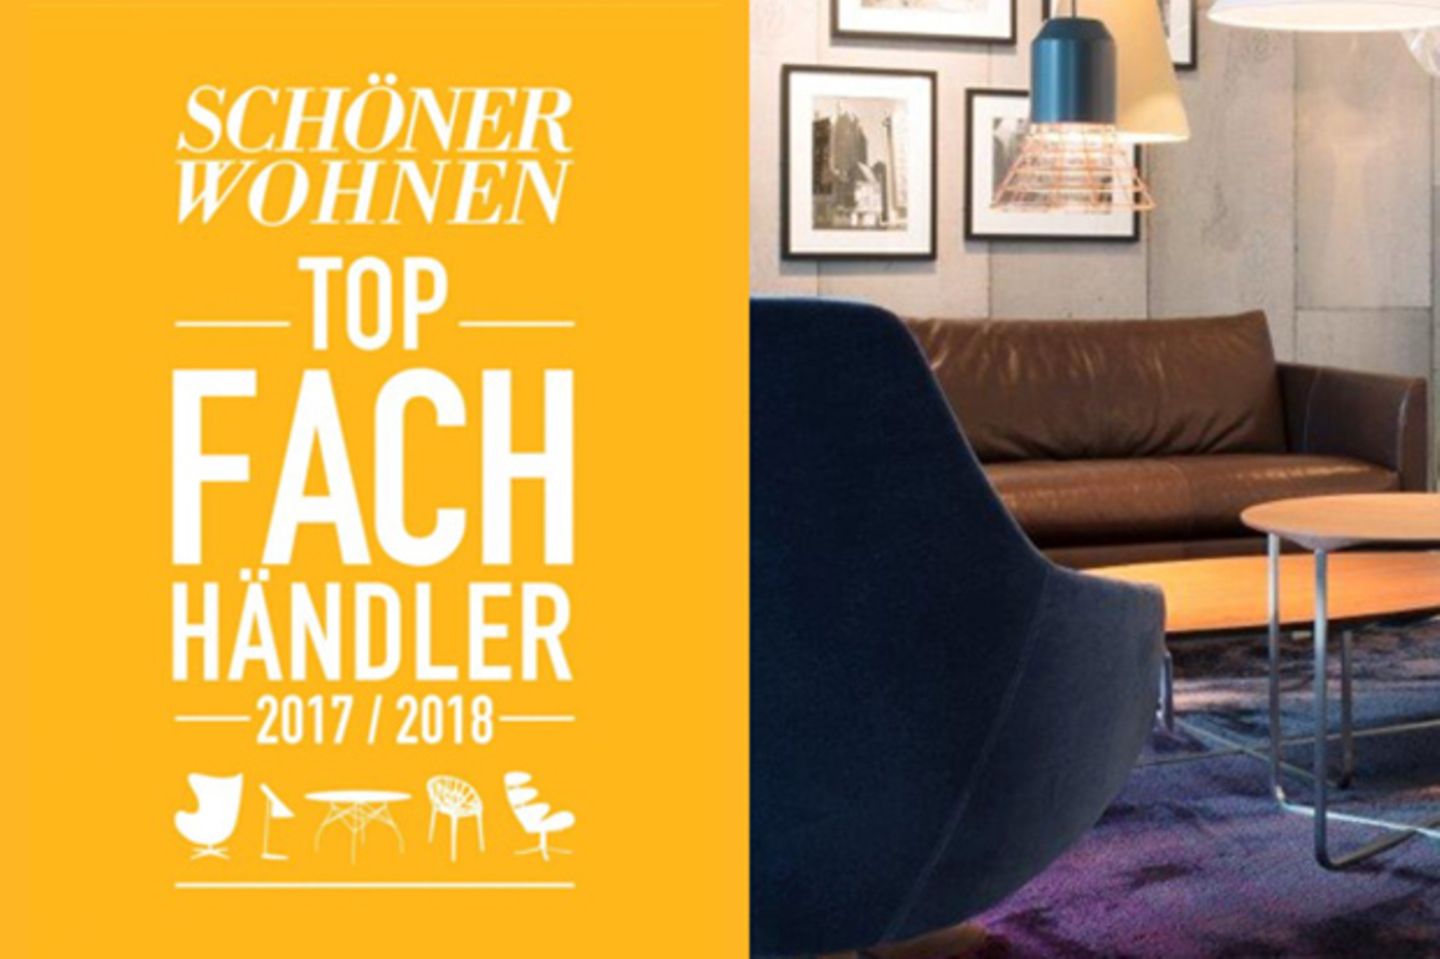 SCHÖNER WOHNEN Händlerkompass: Unsere Top-Fachhändler 2017/18* – ausgewählt von SCHÖNER WOHNEN